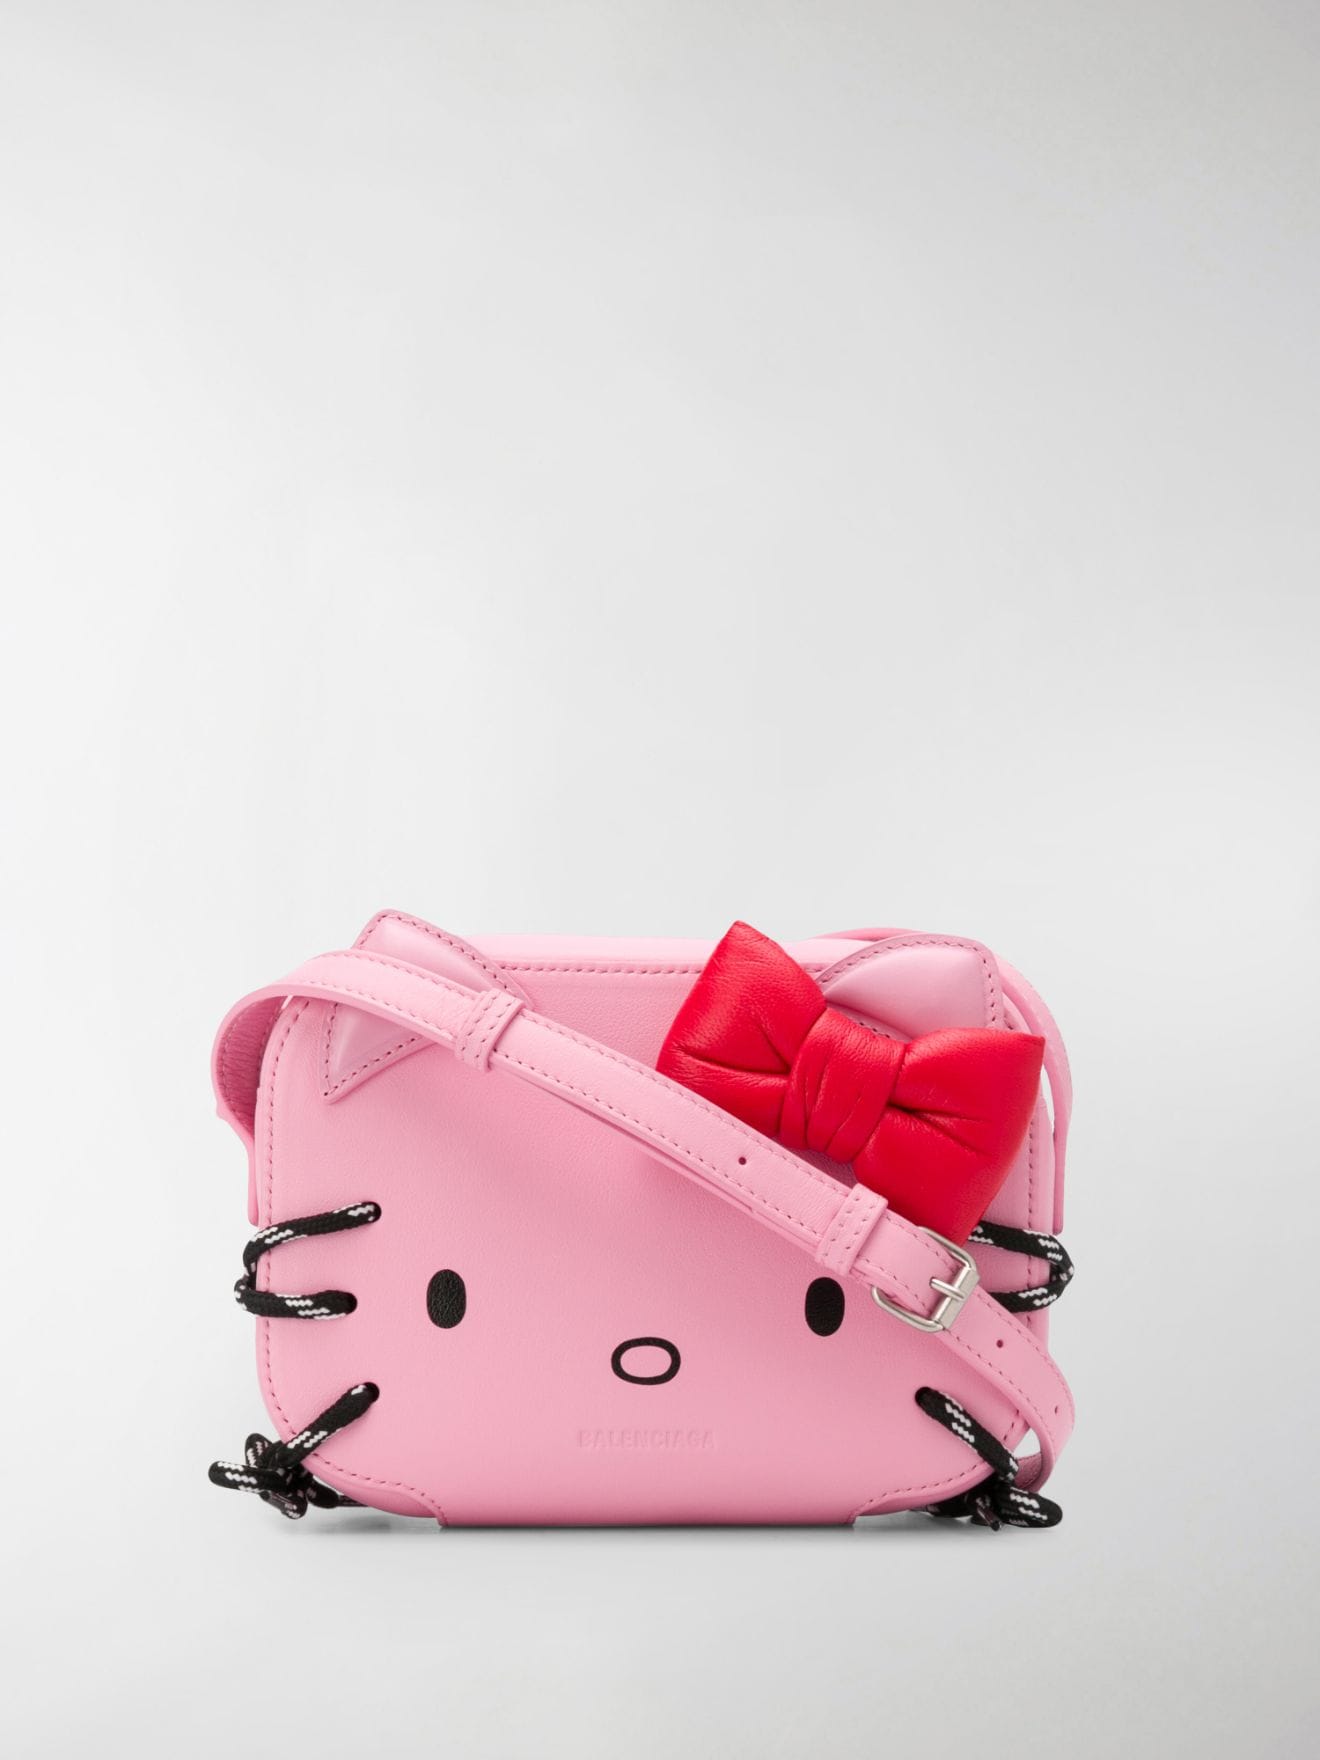 balenciaga hello kitty handbag